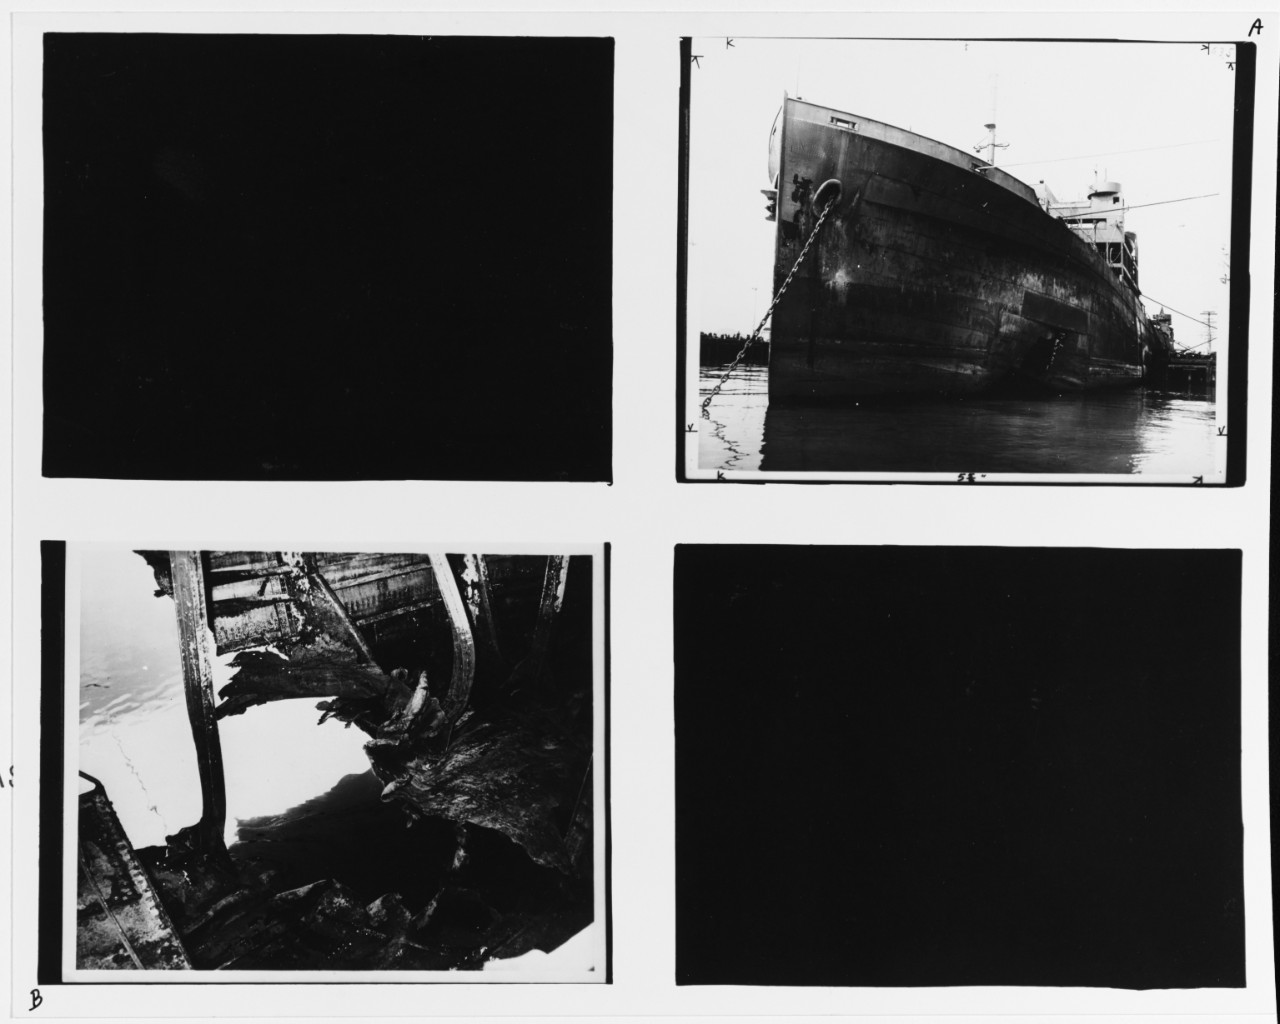 S.S. W.S. RHEEM (U.S. Merchant Tanker, 1921-1947)